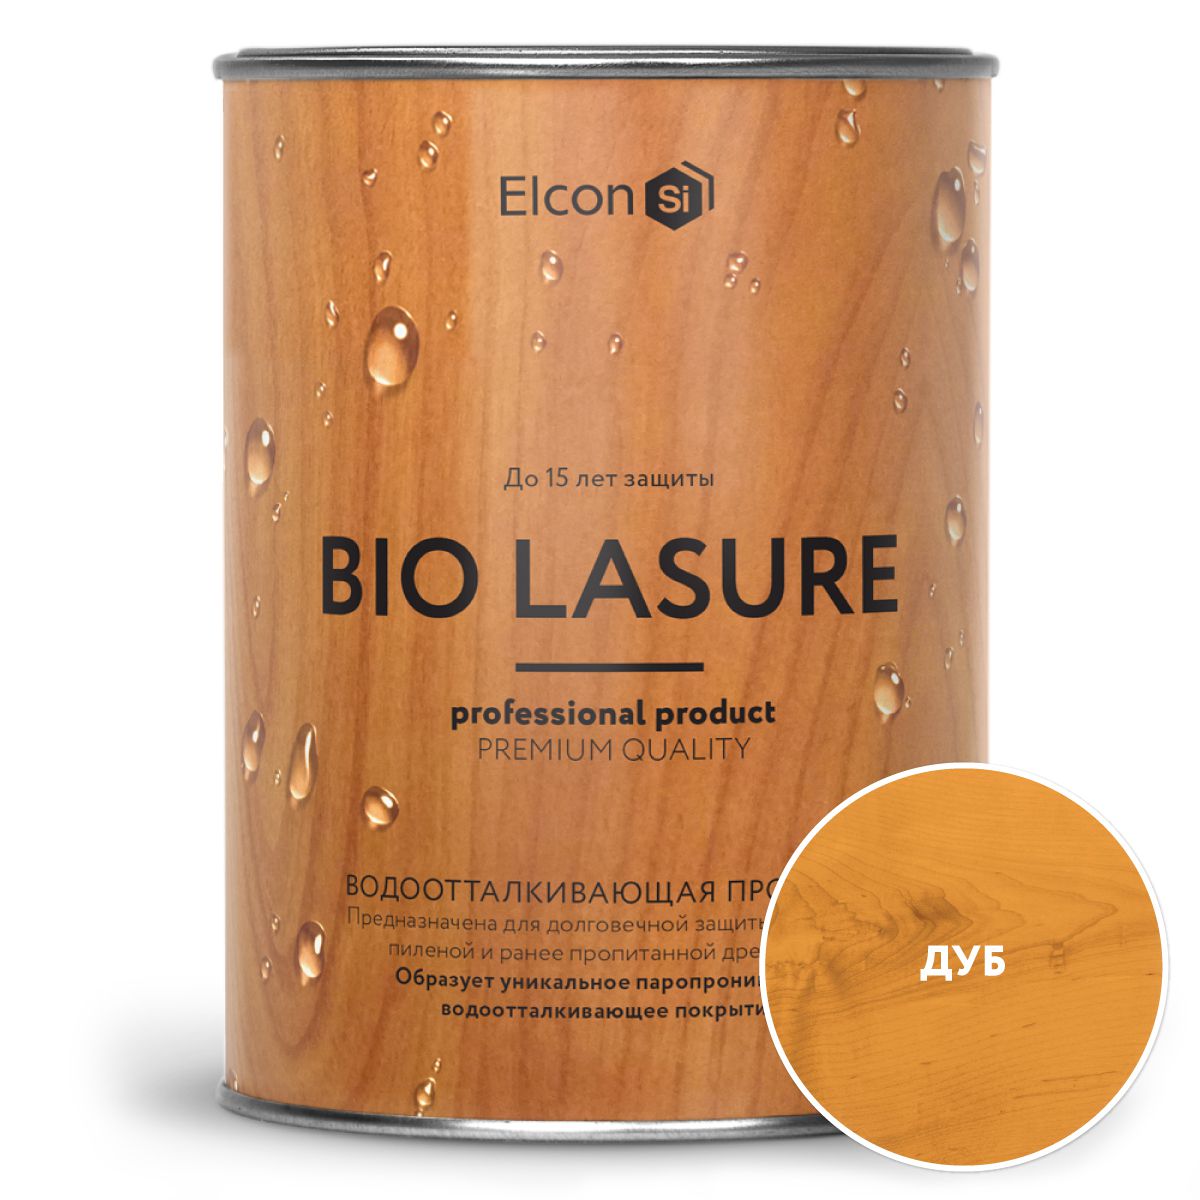 Водоотталкивающая пропитка для защиты дерева, Elcon Bio Lasure, дуб 0,9л пропитка для дерева elcon bio lasure водоотталкивающая каштан 9 л